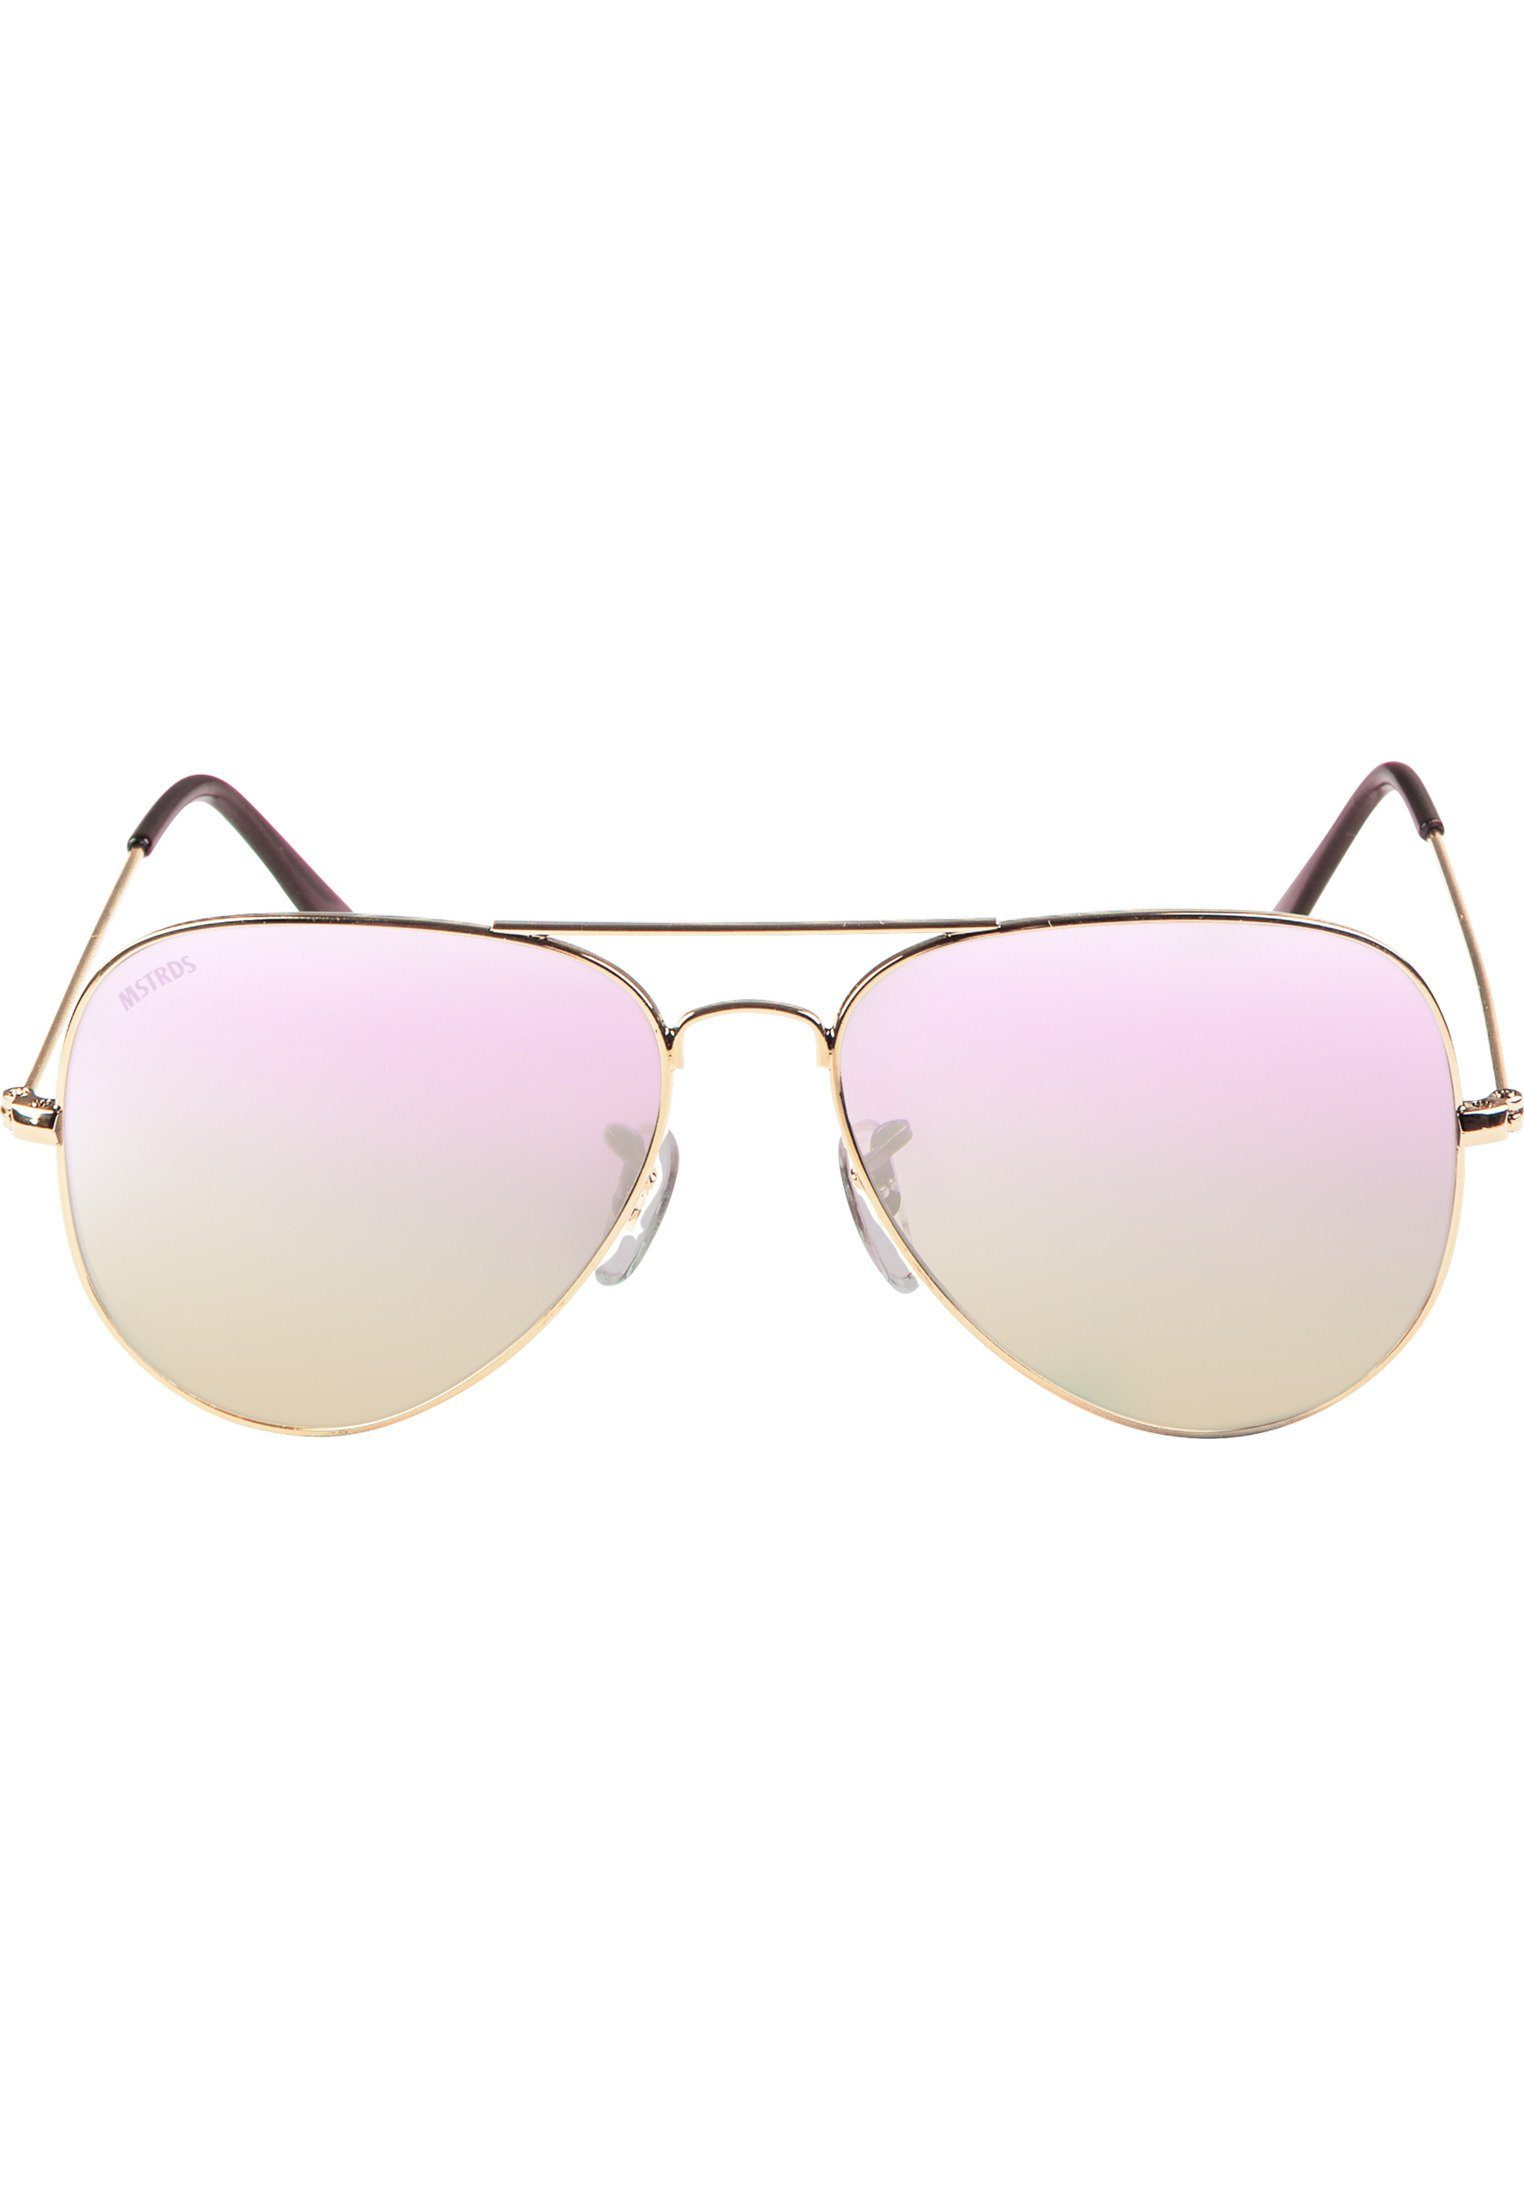 MSTRDS Sonnenbrille Accessoires Sunglasses PureAv gold/rosé Youth